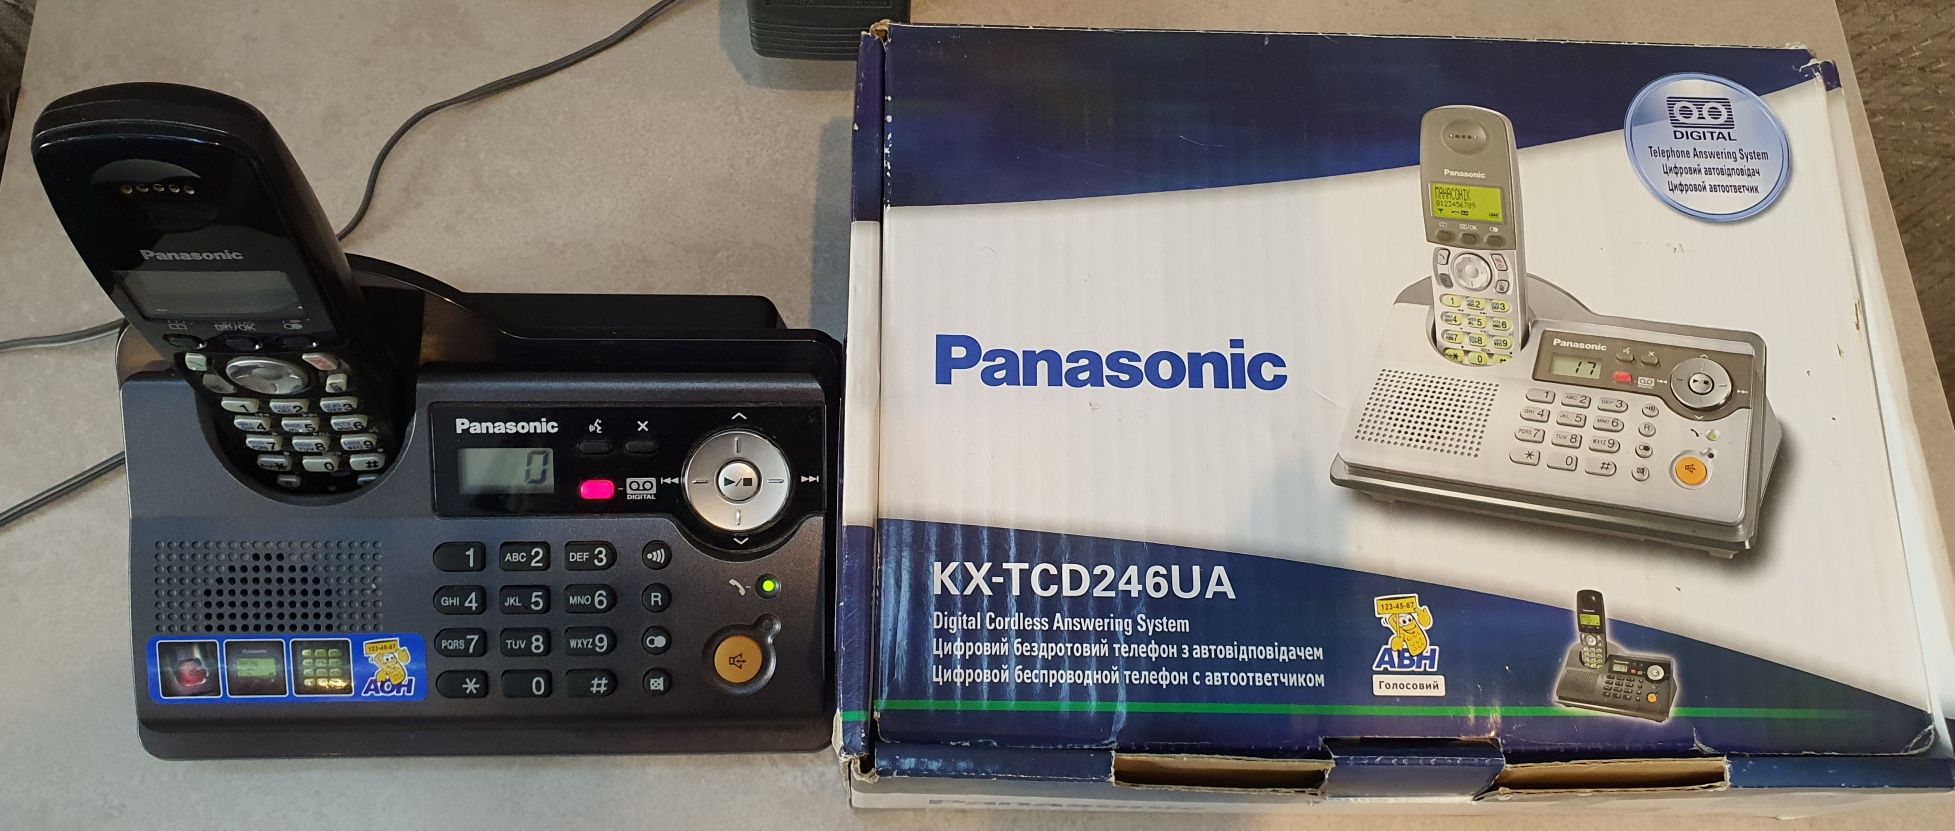 Стационарный цифровой беспроводной телефон с автоответчиком  Panasonic